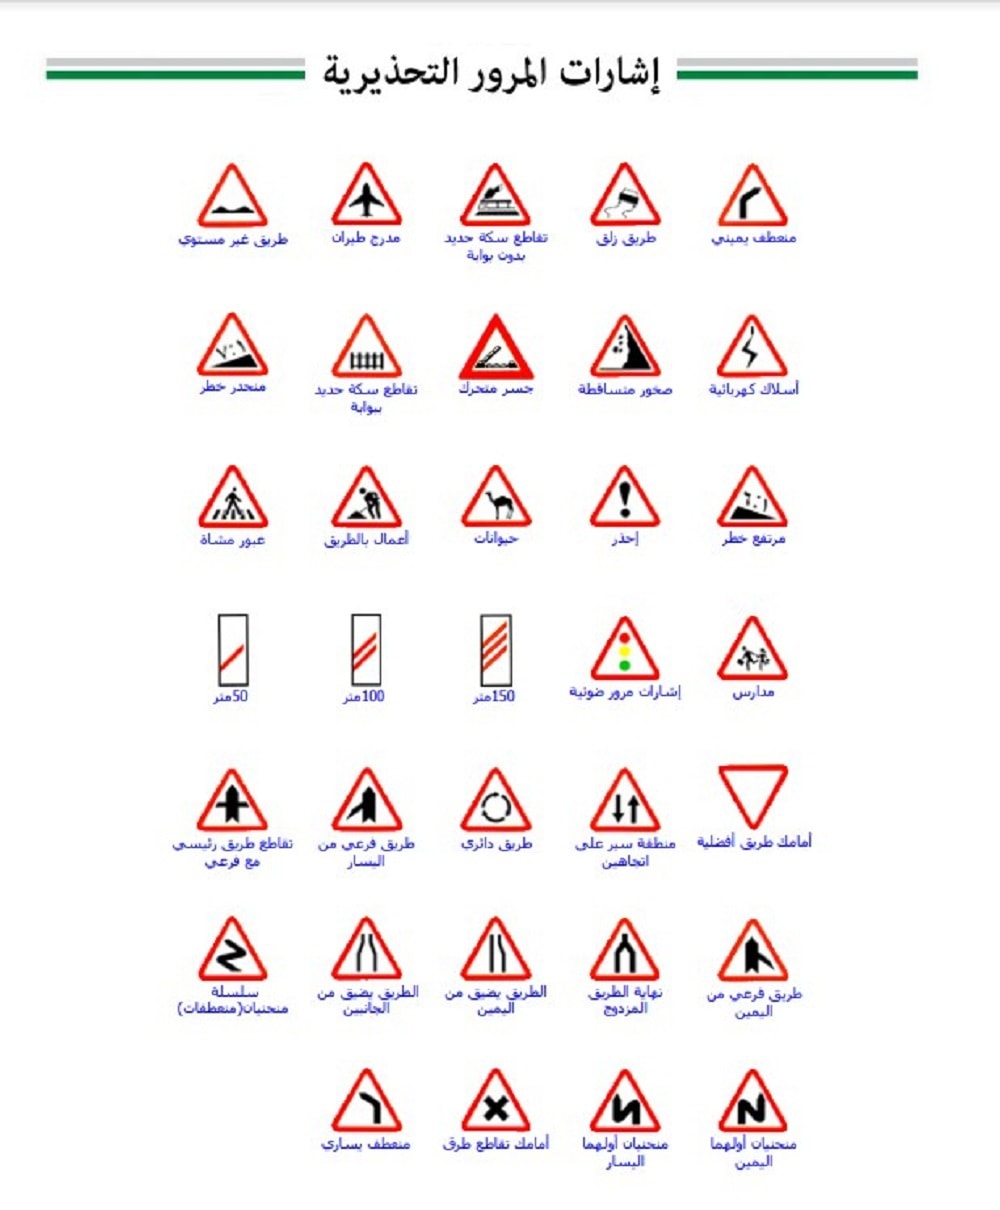 اشارات المرور السعودية pdf مدلولات دليل إشارات المرور